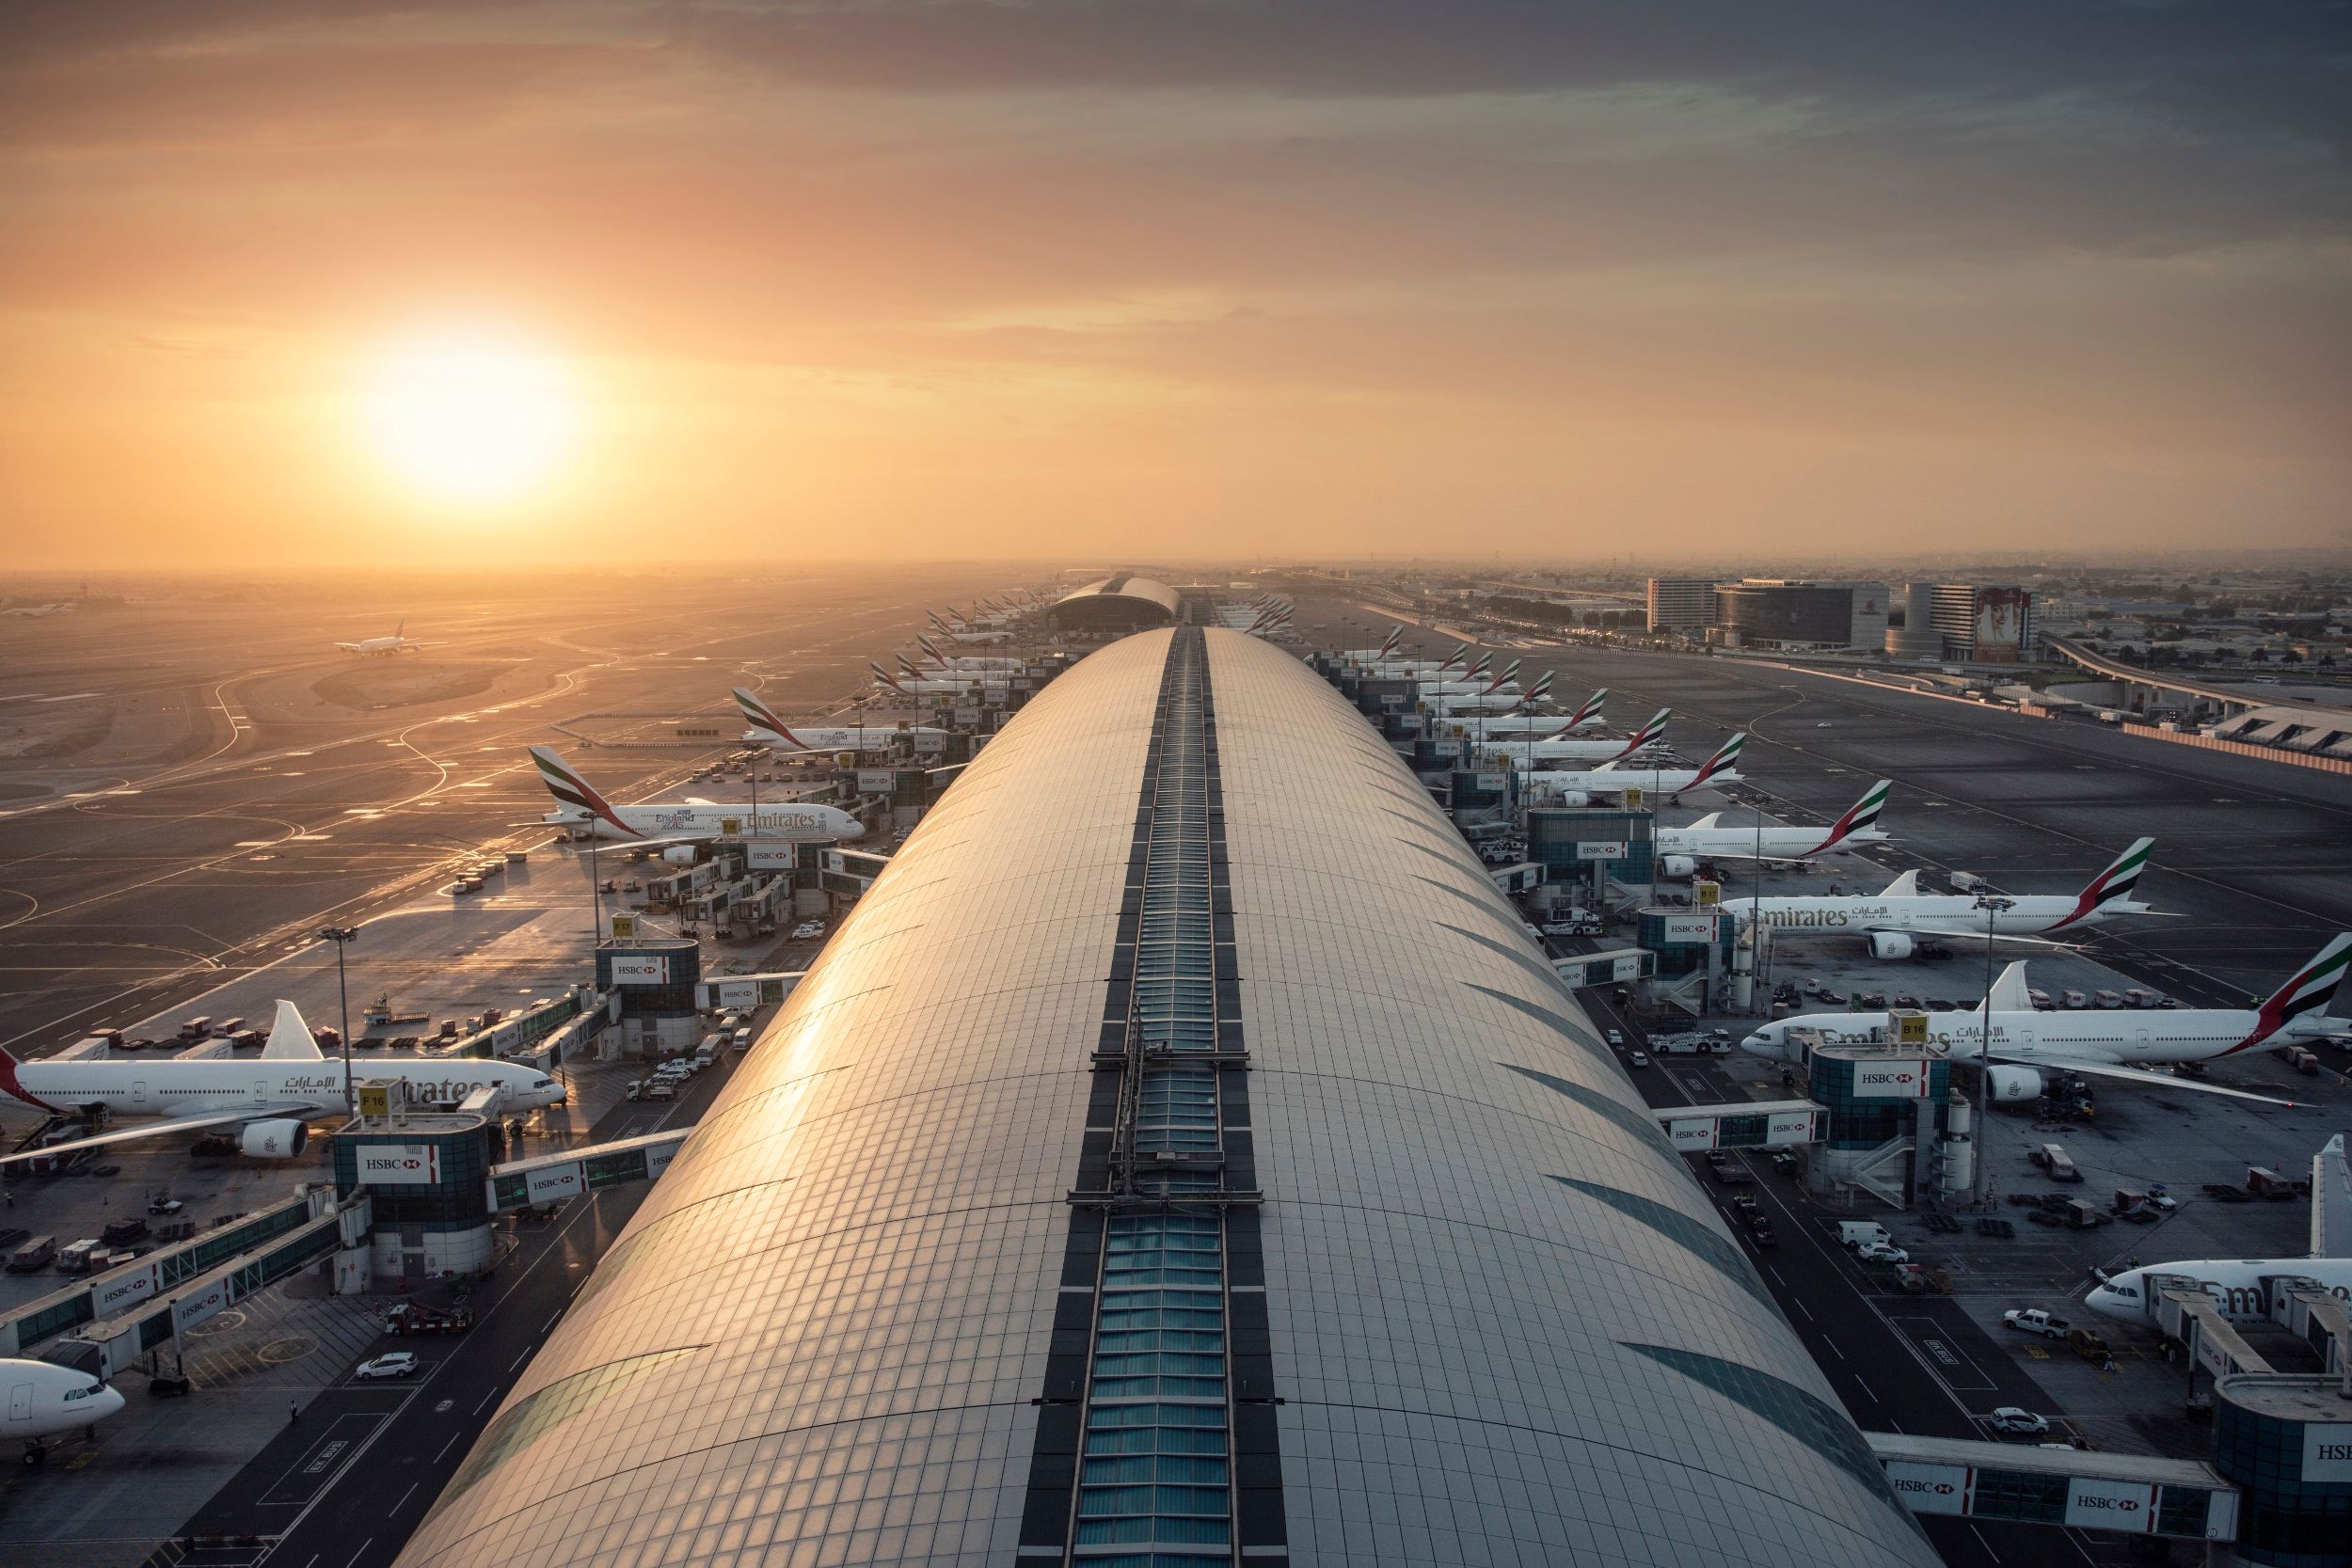 从迪拜国际机场 ATC 塔拍摄的 B 大厅、机场停机坪和几架阿联酋航空飞机的全景。